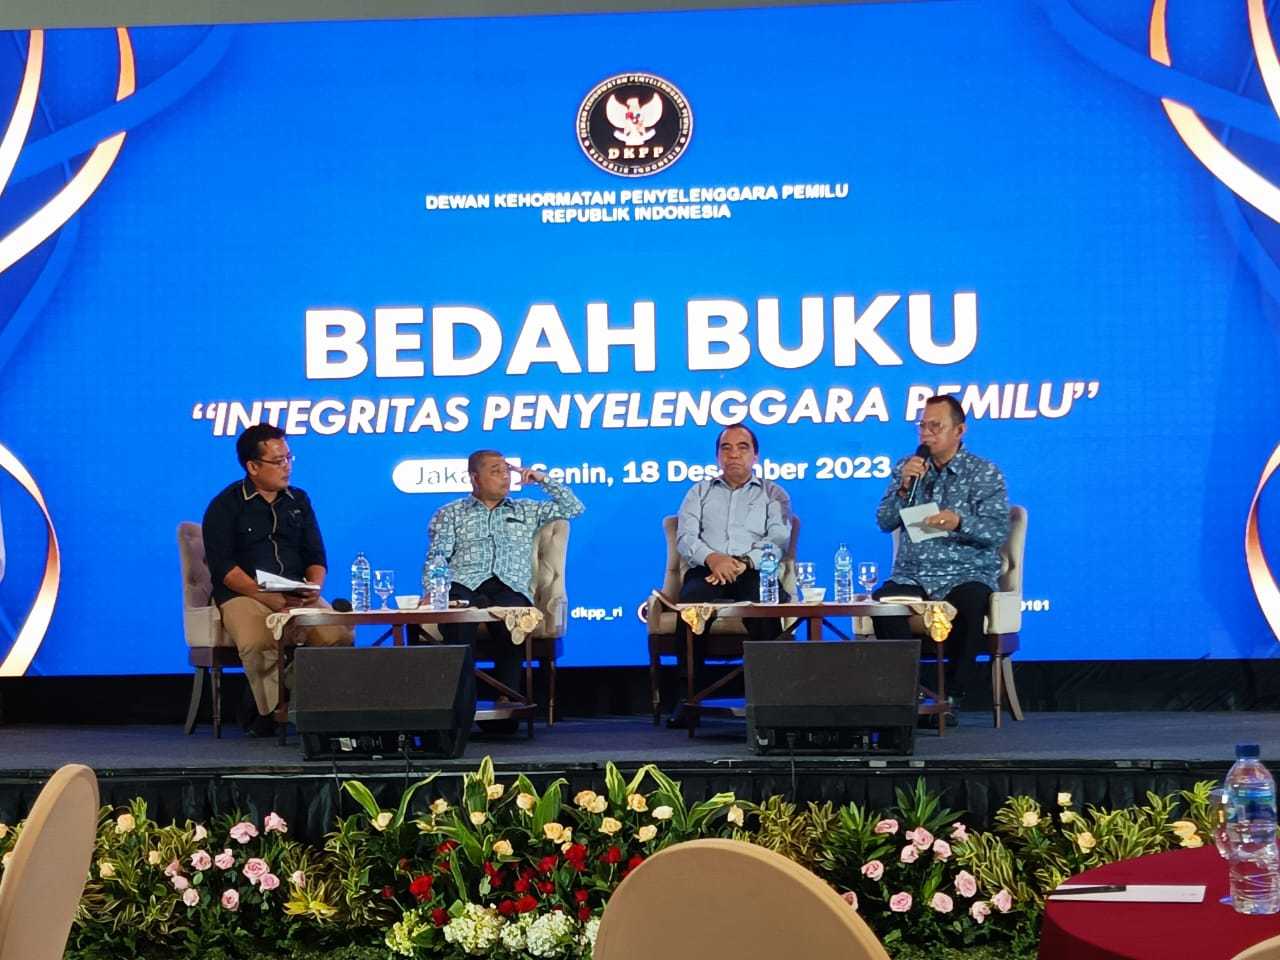 Benny Susetyo: Pemilu Indonesia Dihadapkan pada Ancaman yang Mengganggu Integritas dan Keberlanjutan  Demokrasi